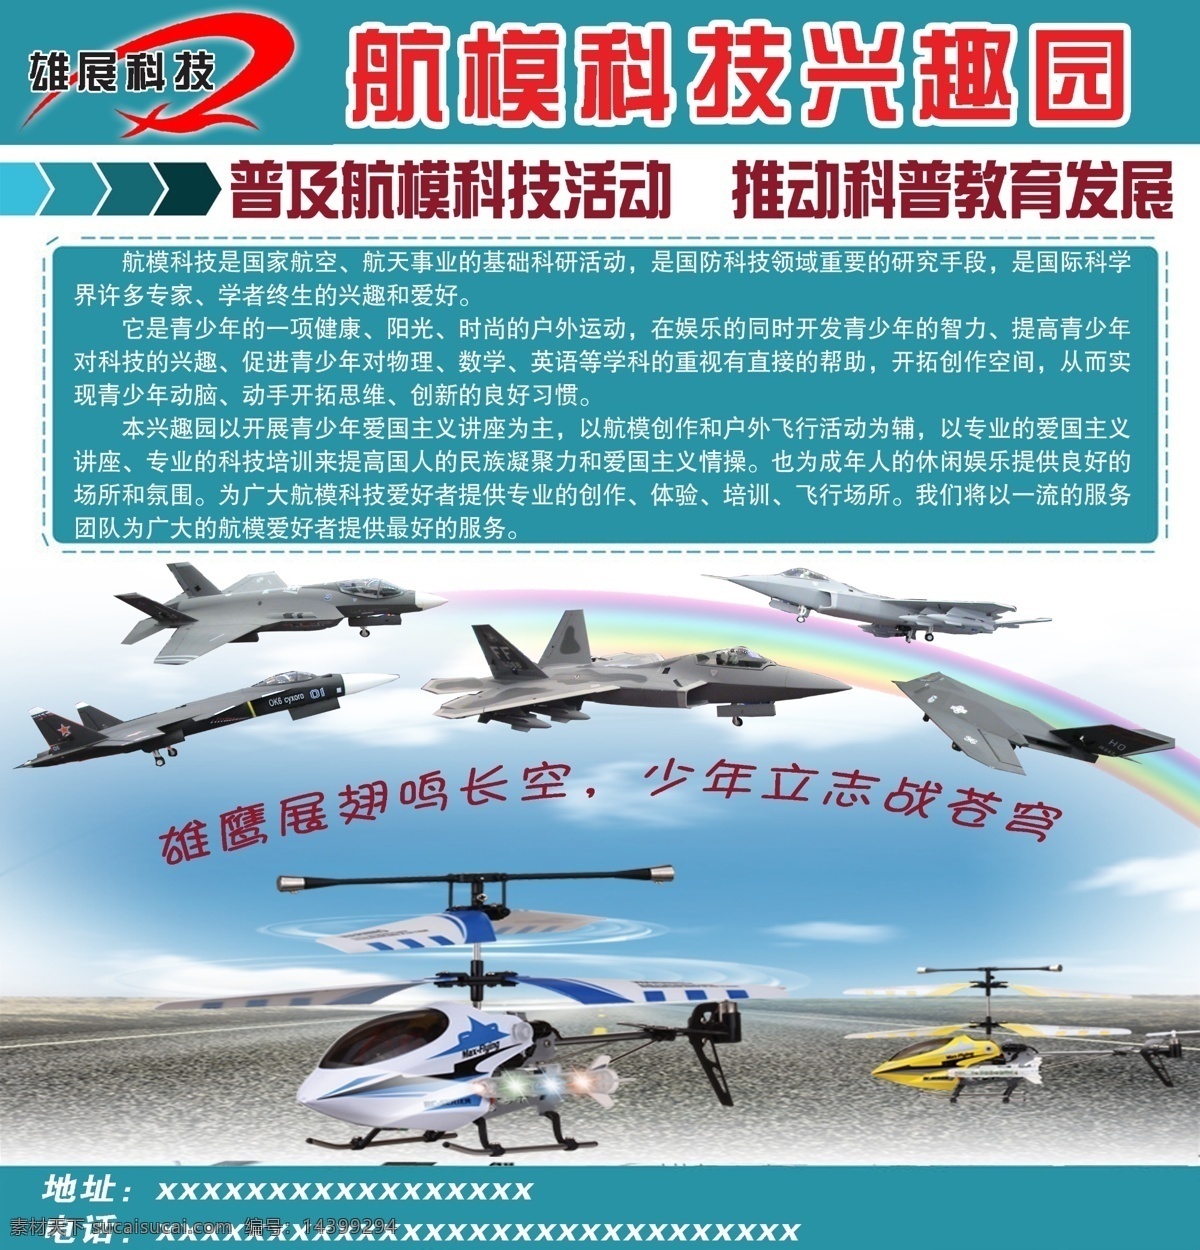 航模 科技 兴 趣园 飞机航模 科技园 介绍 彩虹 飞机模型比赛 分层 源文件